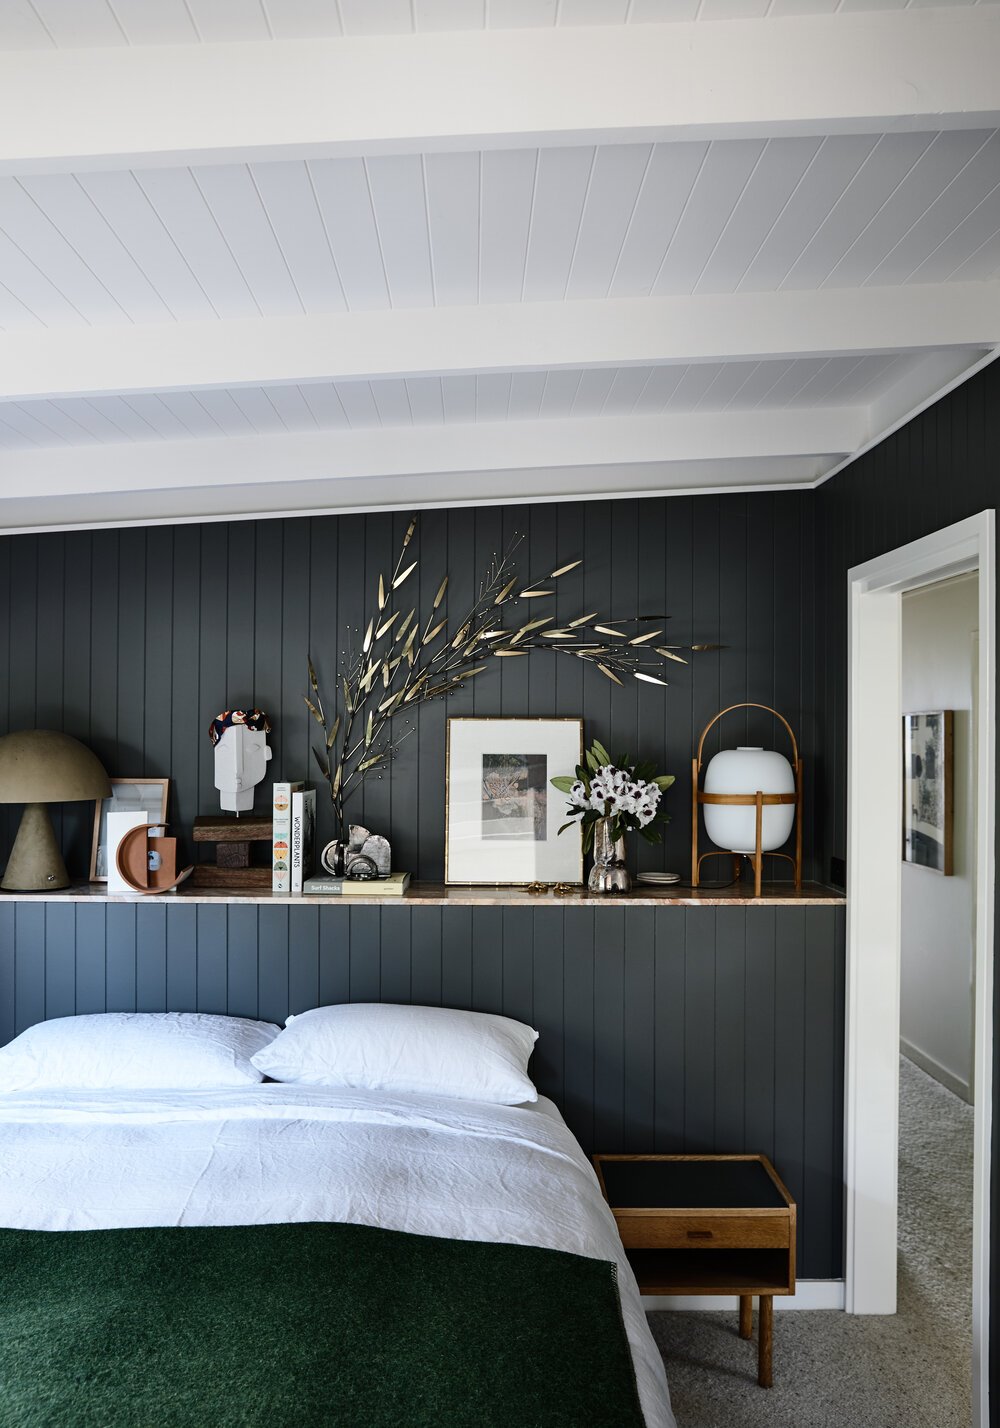 Dormitorio con paredes de tablones de madera y balda con objetos decorativos lampara cestita santa cole